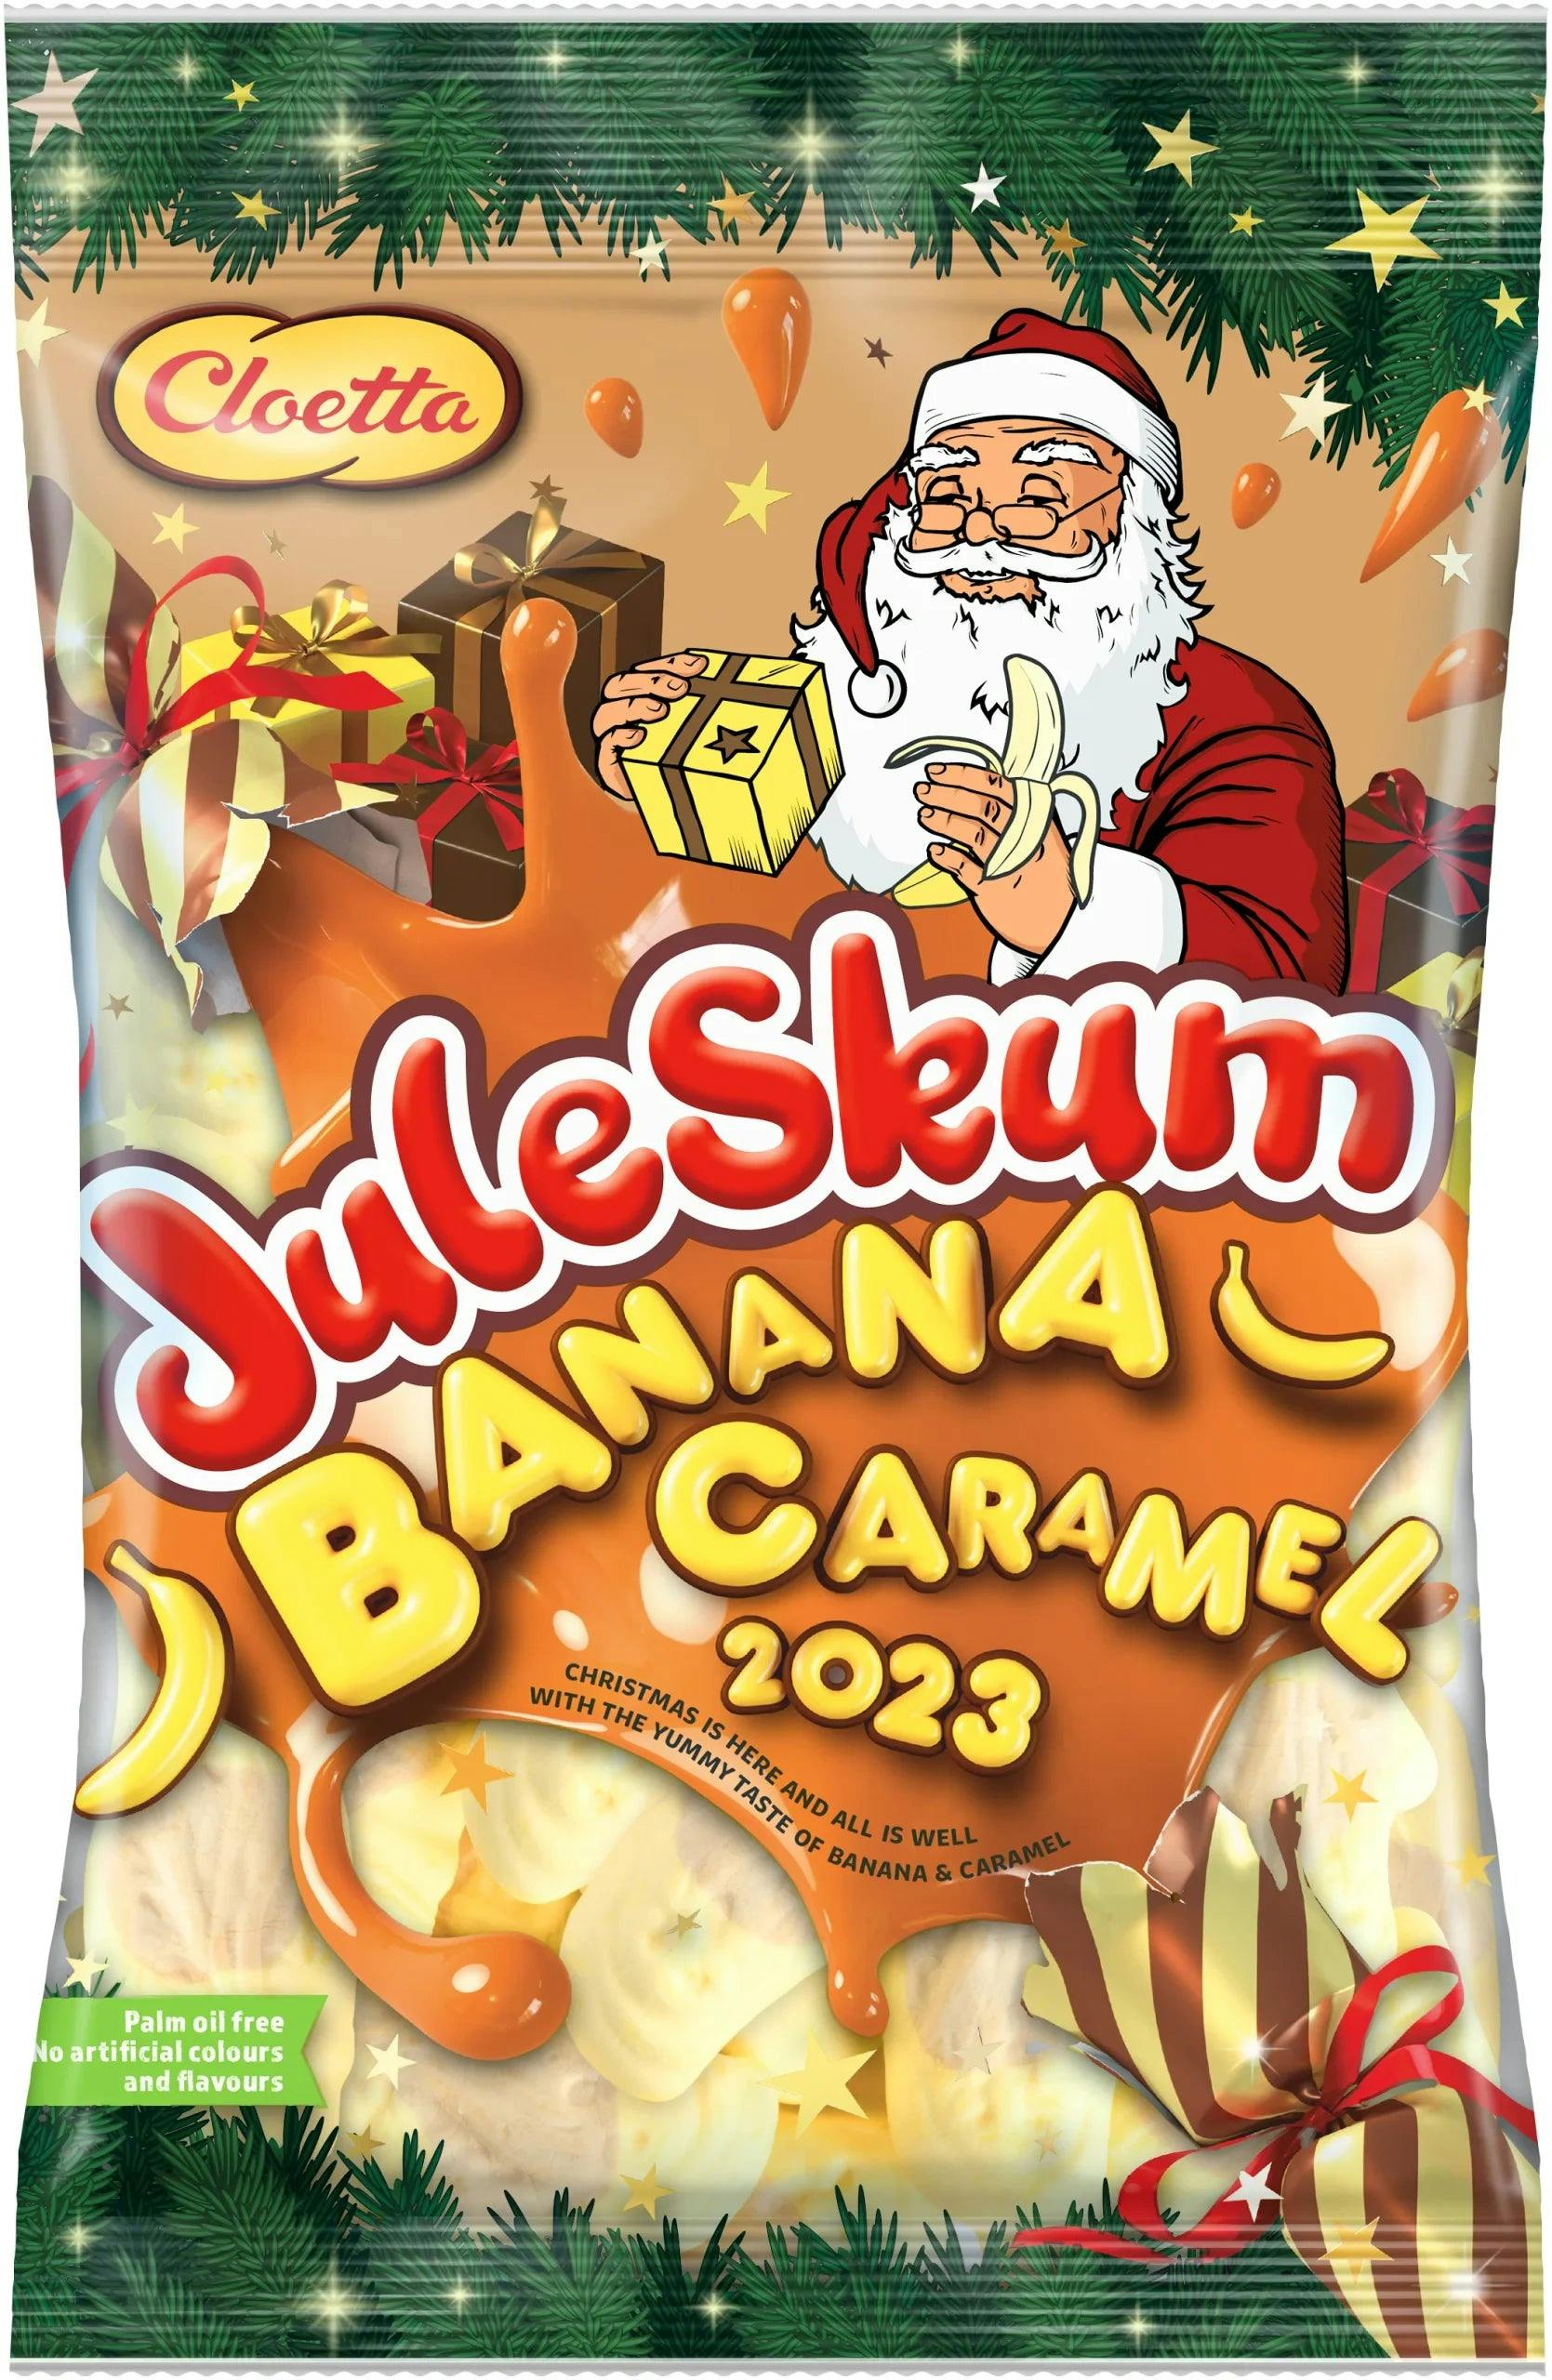 Cloetta Juleskum Banana & Fudge by Sweet Side of Sweden